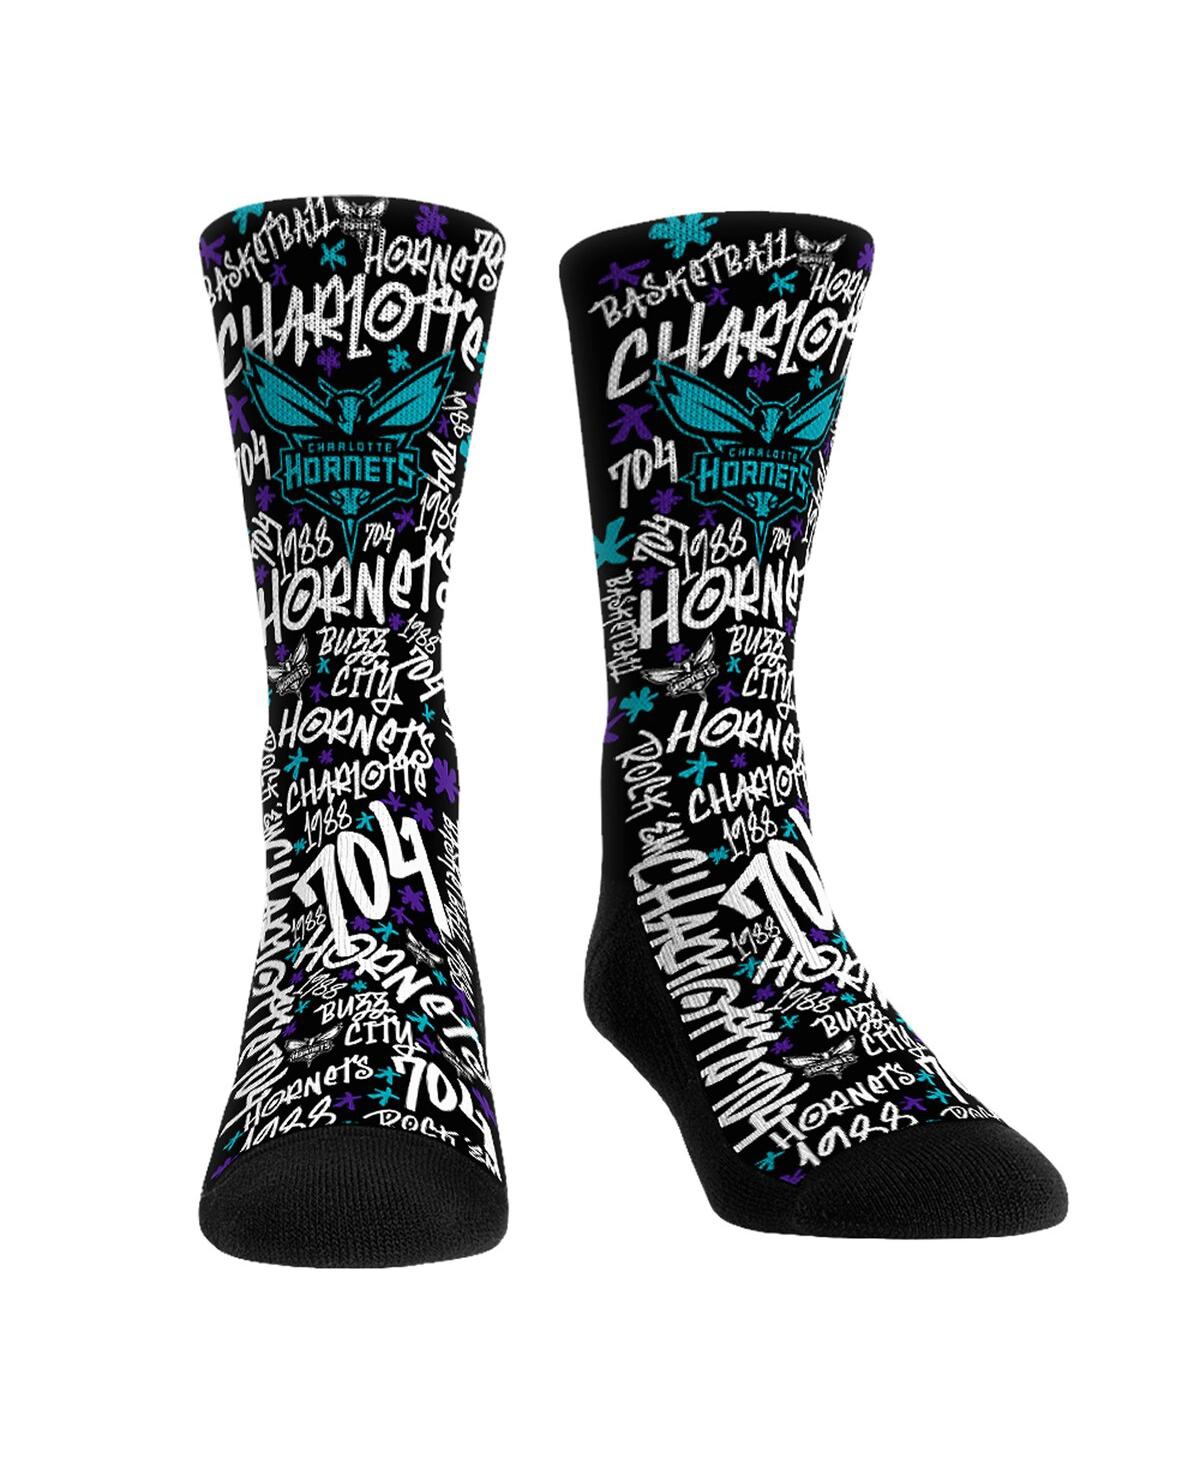 Rock 'em Men's And Women's  Socks Charlotte Hornets Graffiti Crew Socks In Black,white